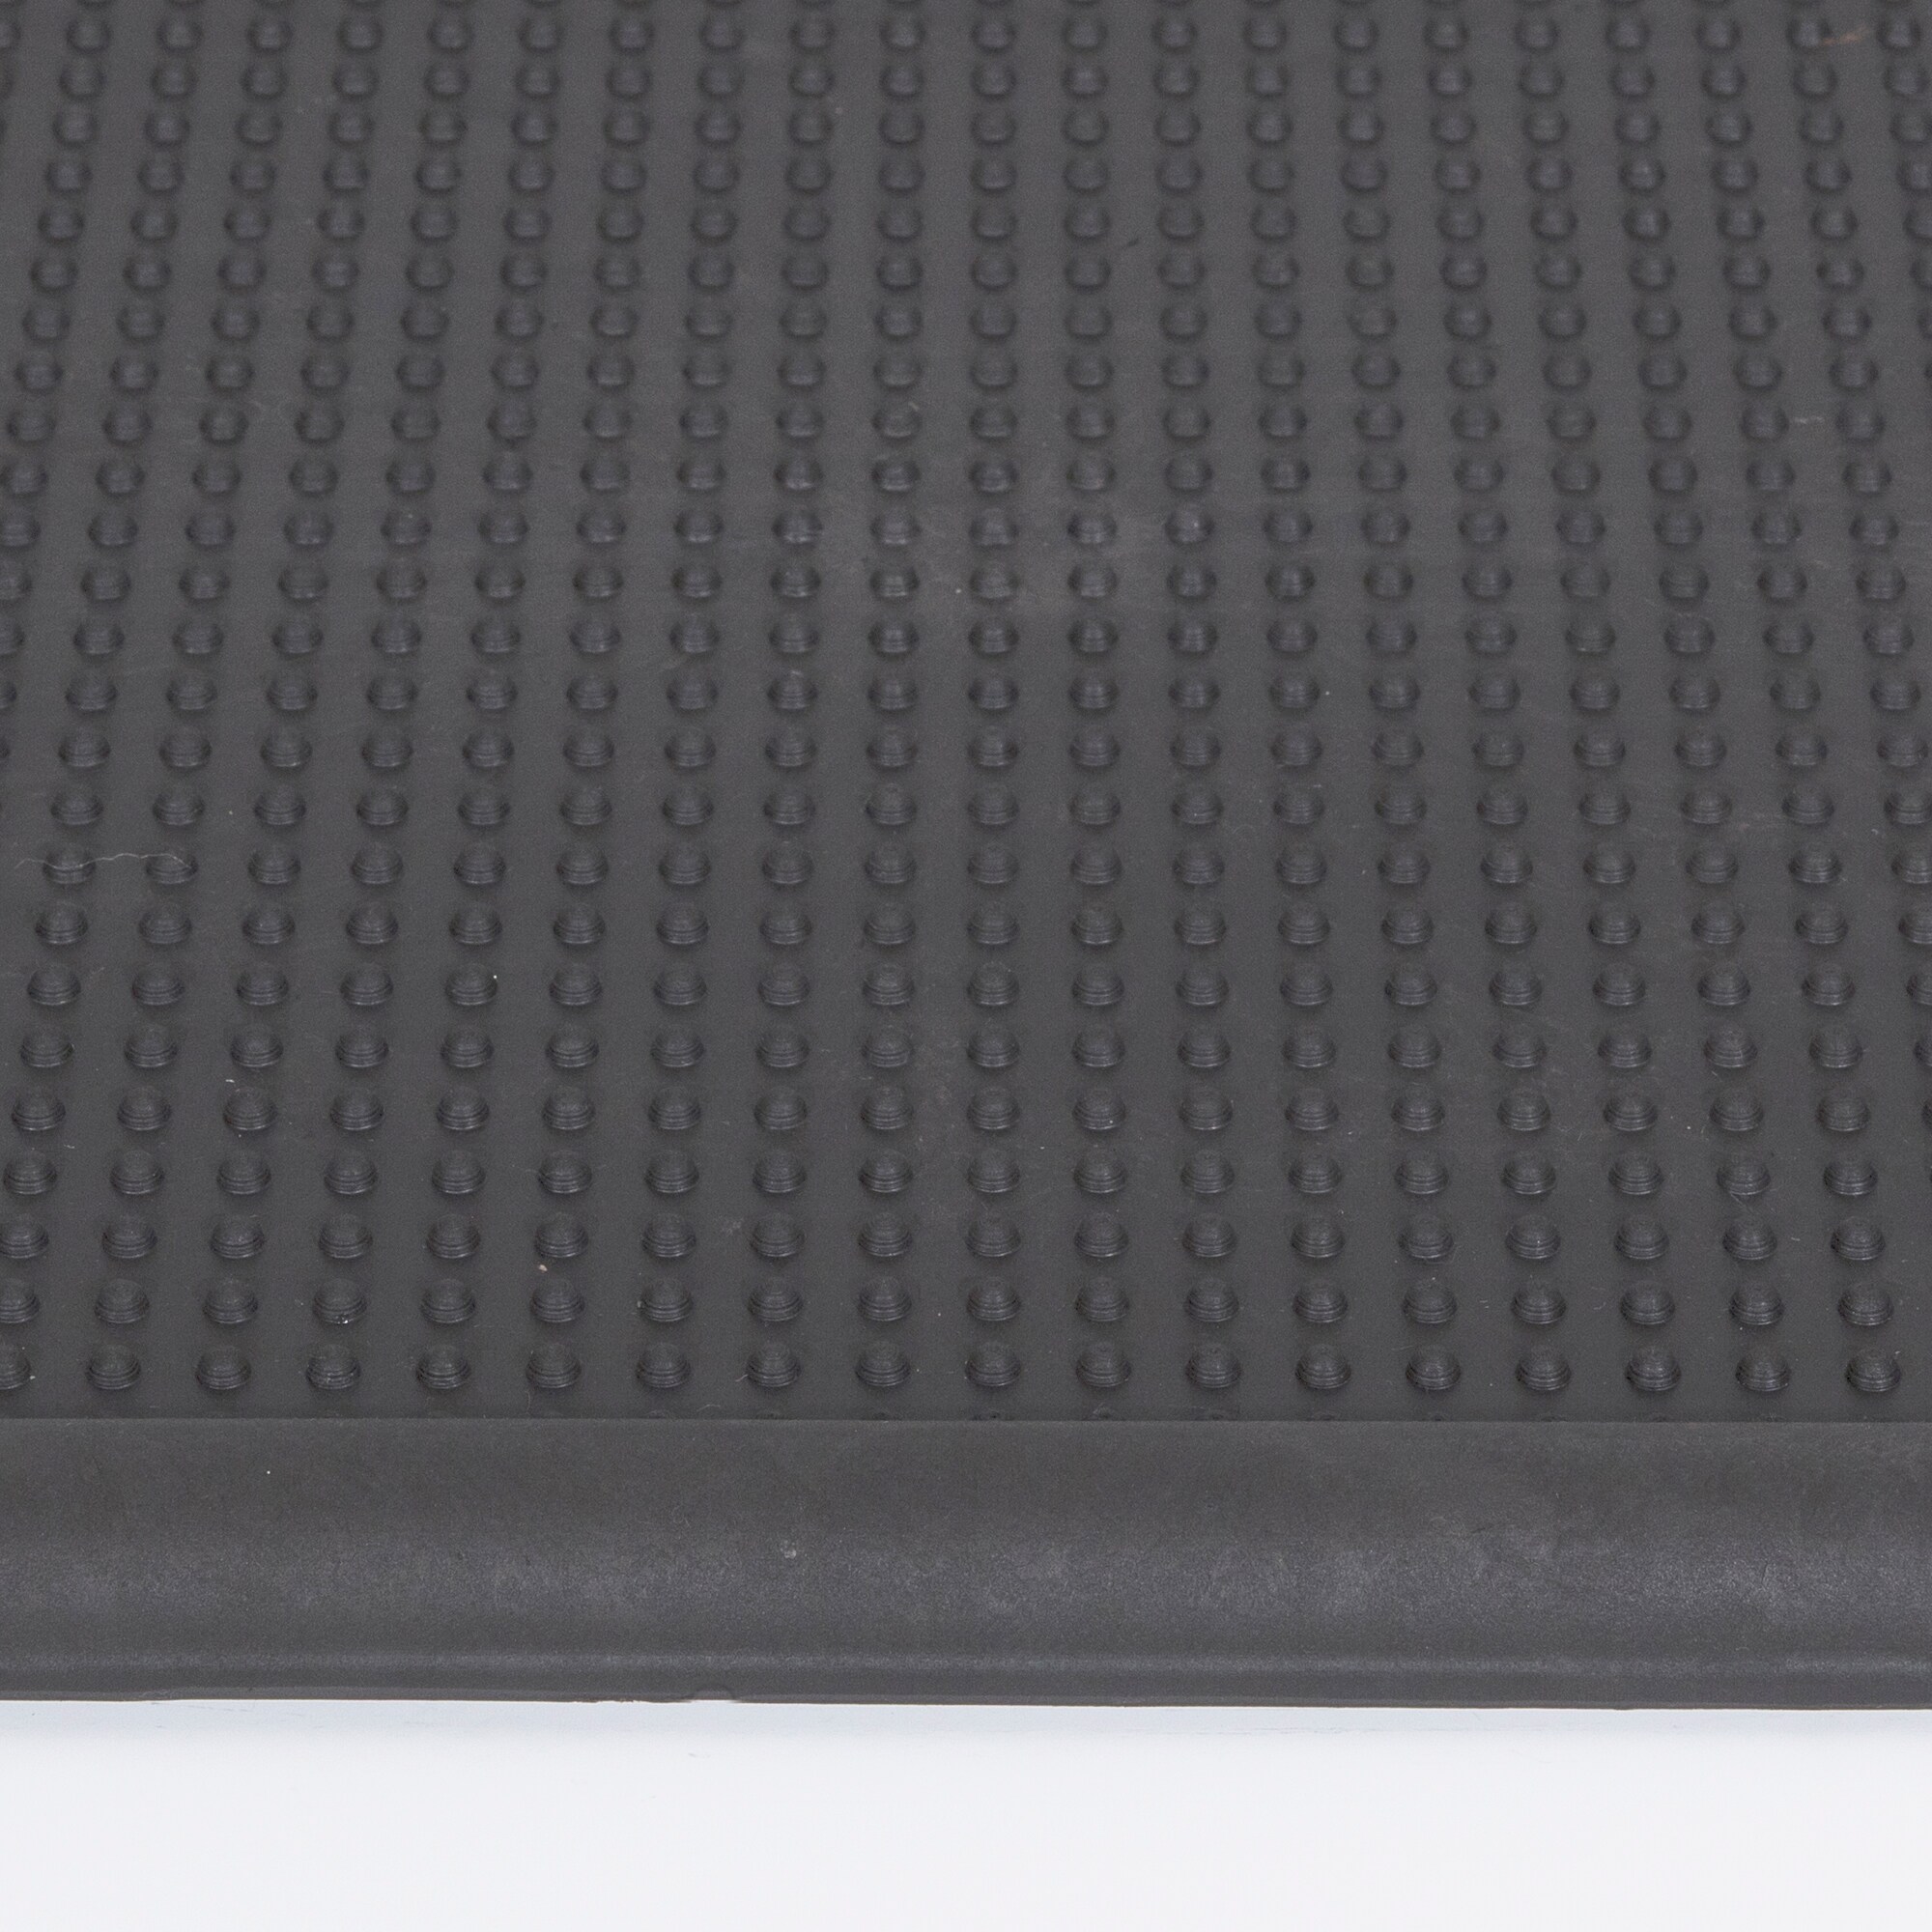 Ottomanson Easy clean, Waterproof Non-Slip Indoor/Outdoor Rubber